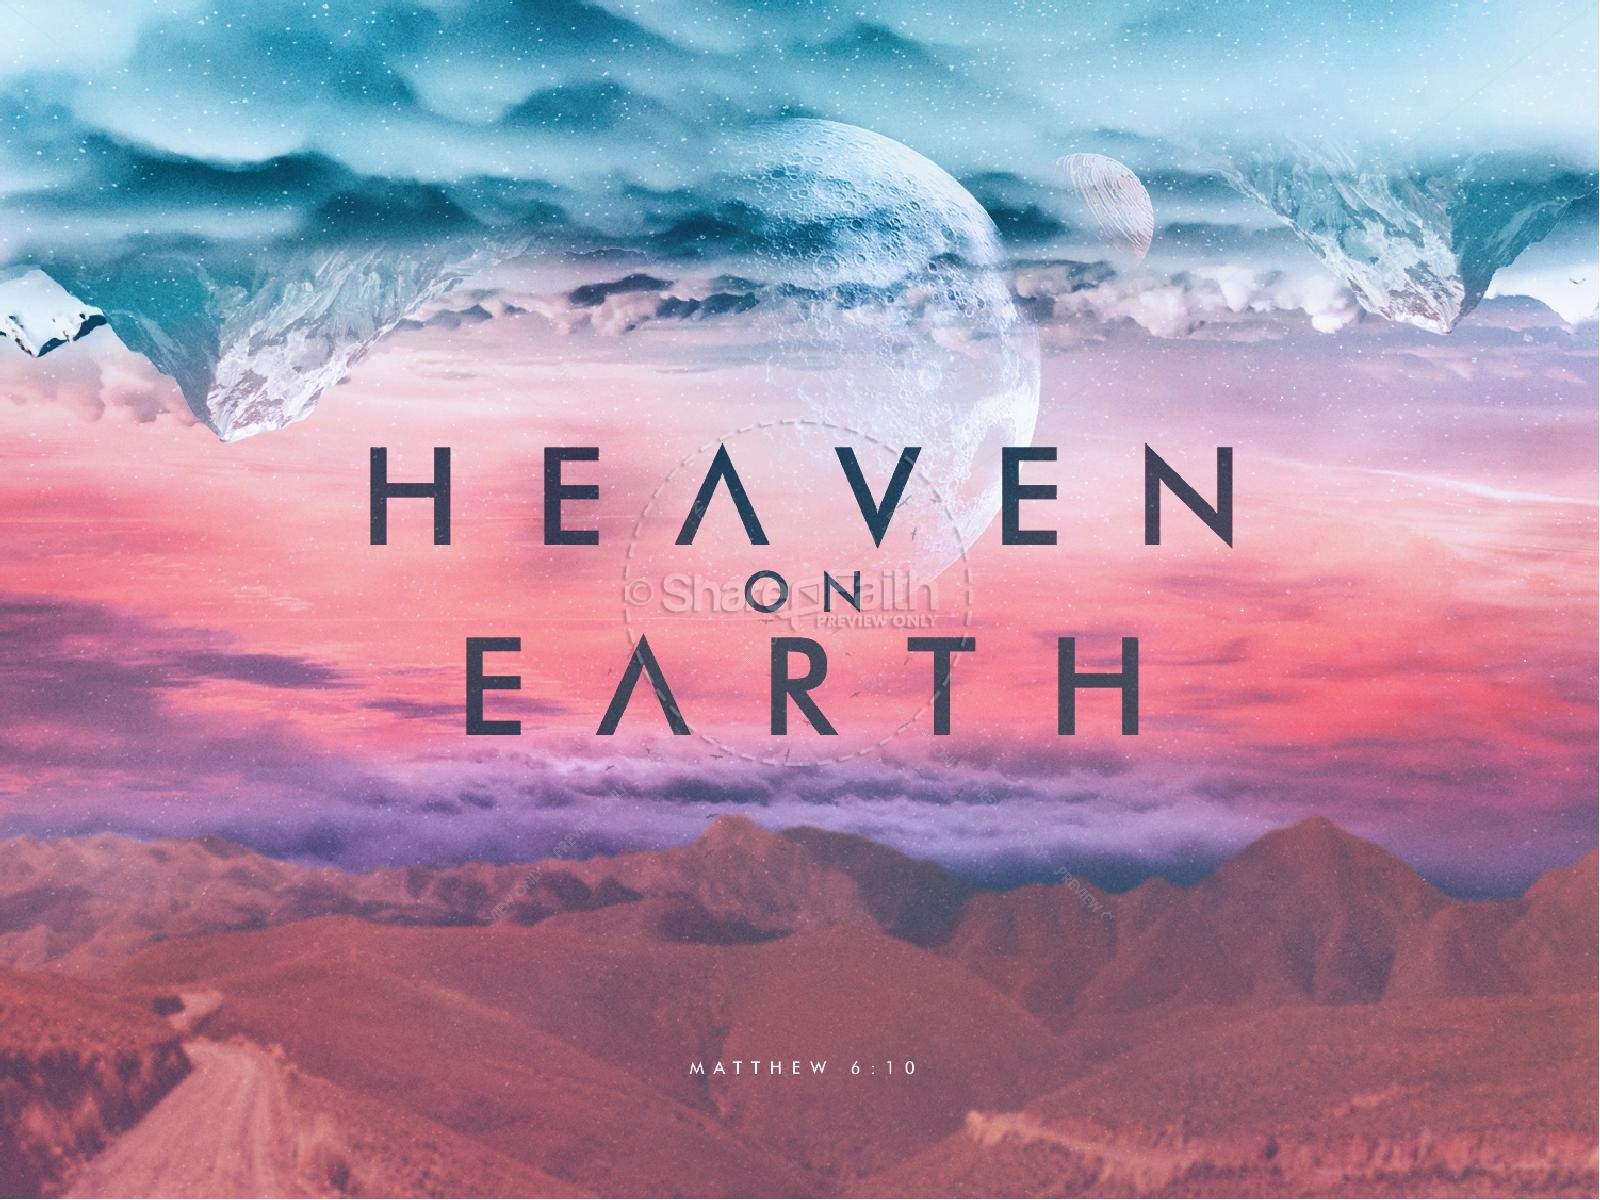 ShareFaith Media » Heaven On Earth Church PowerPoint – ShareFaith Media